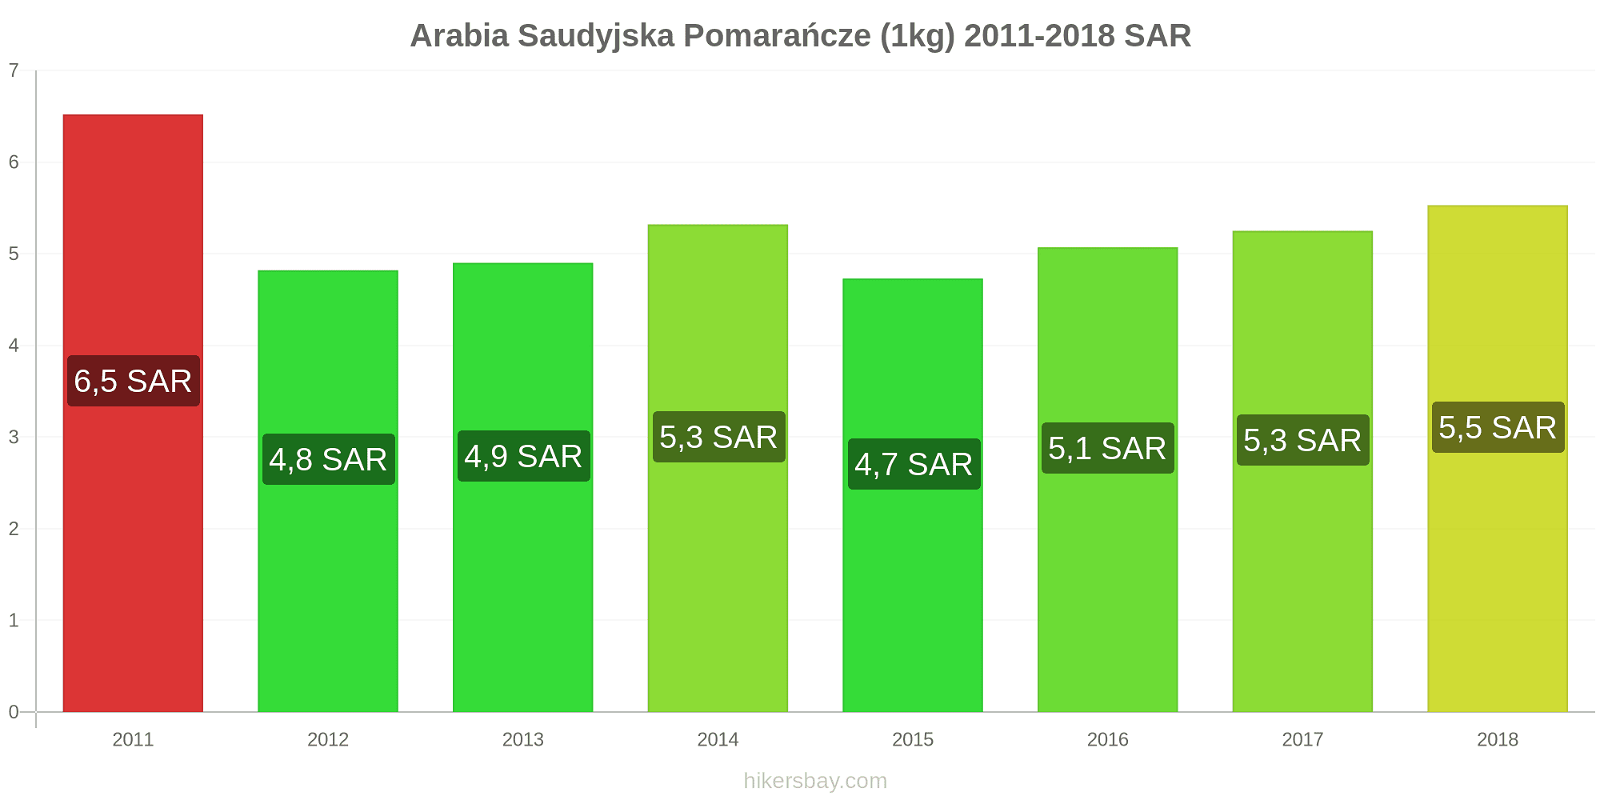 Arabia Saudyjska zmiany cen Pomarańcze (1kg) hikersbay.com